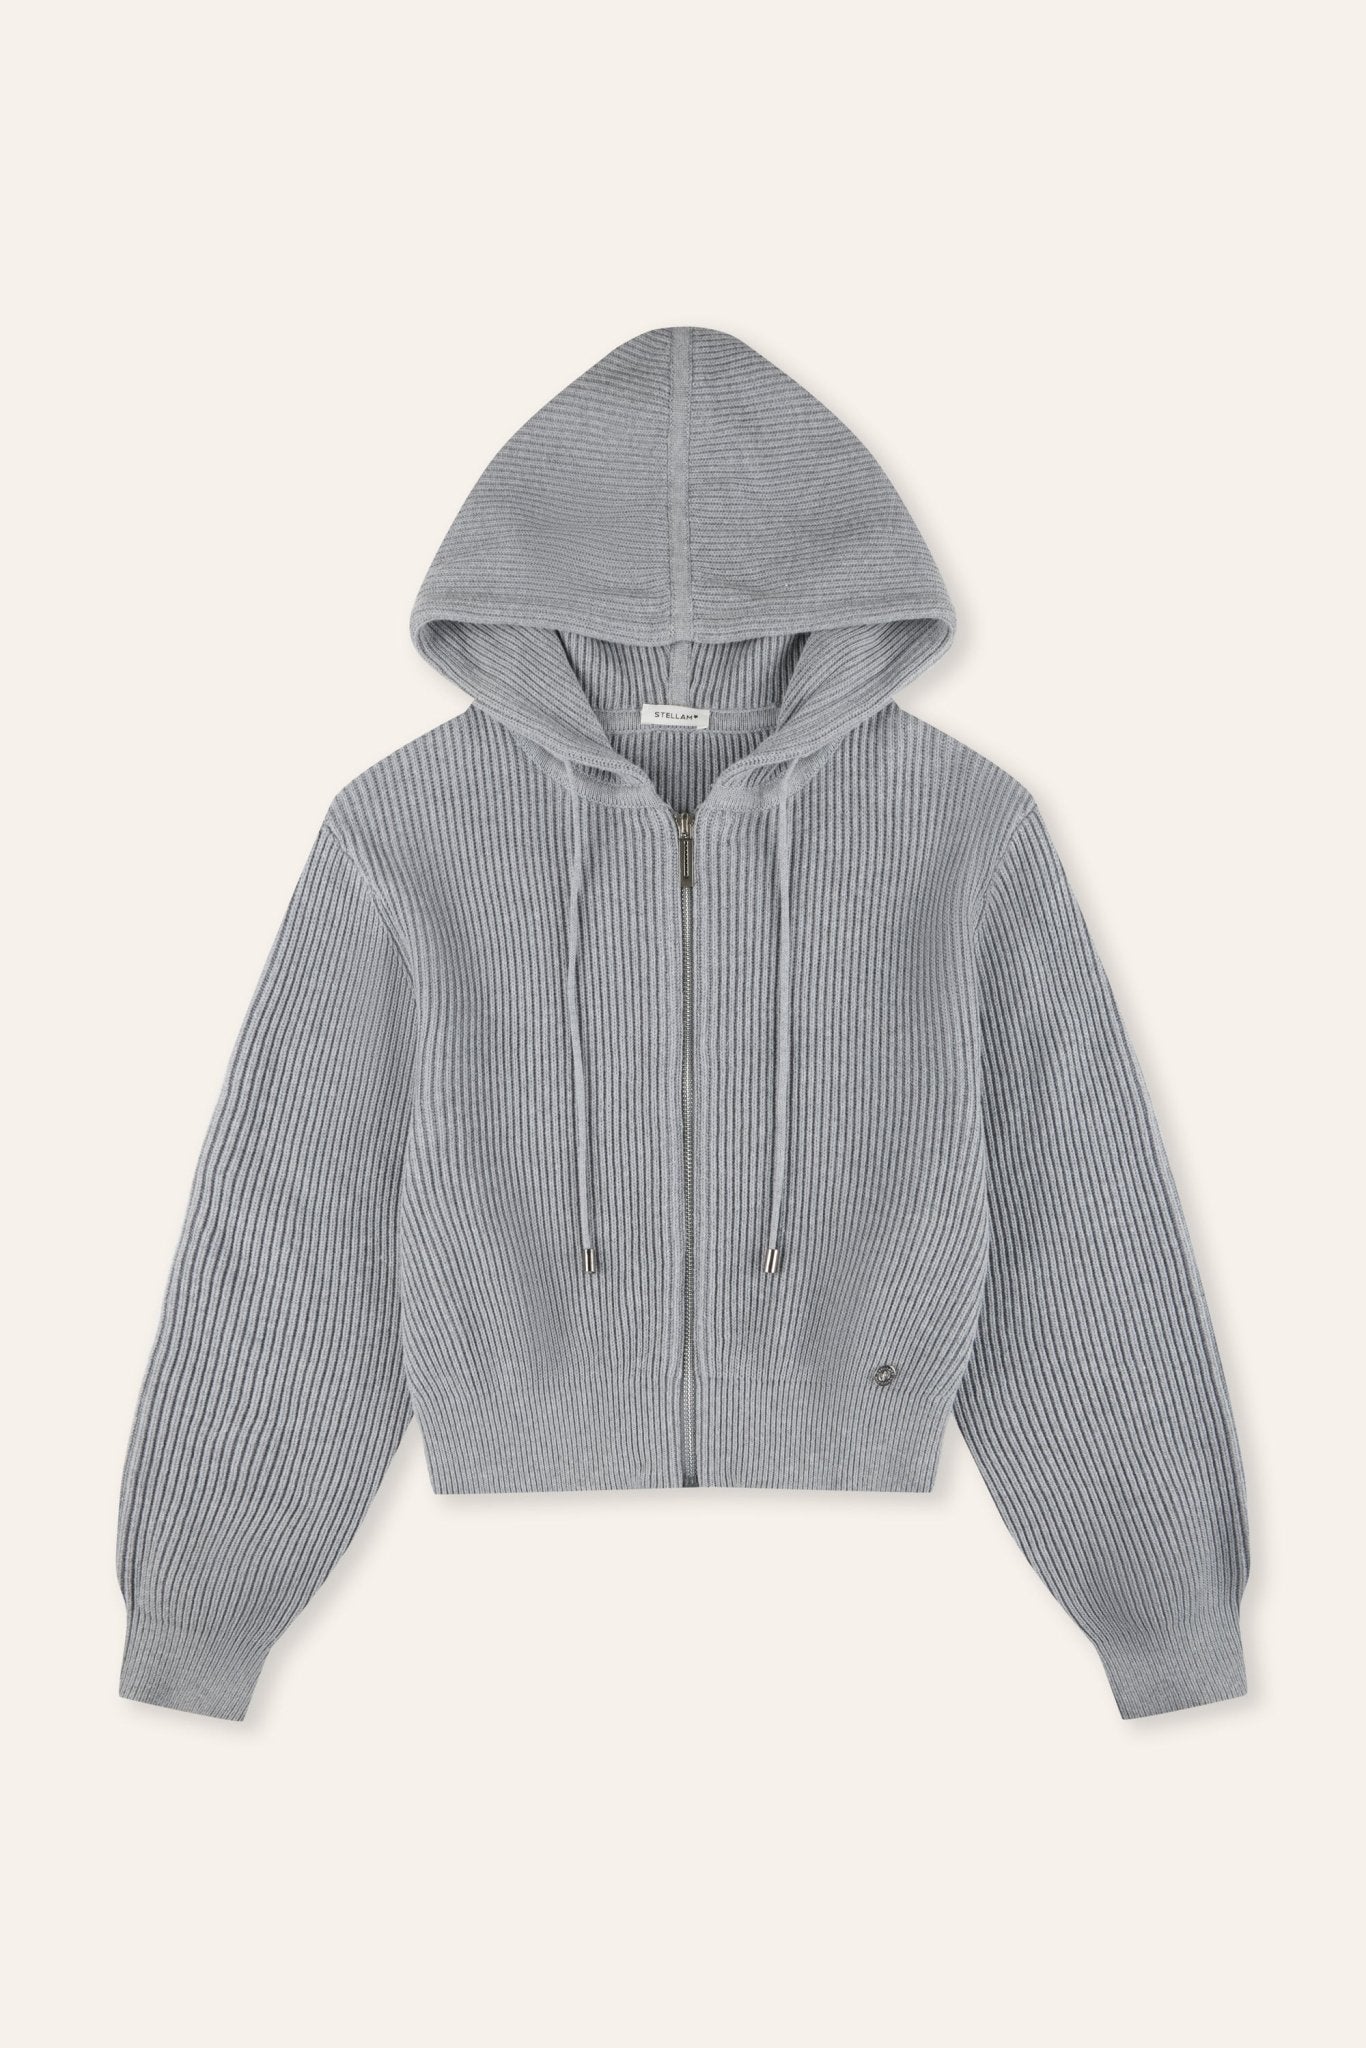 HOODIE cotton zip jacket (Grey) - STELLAM